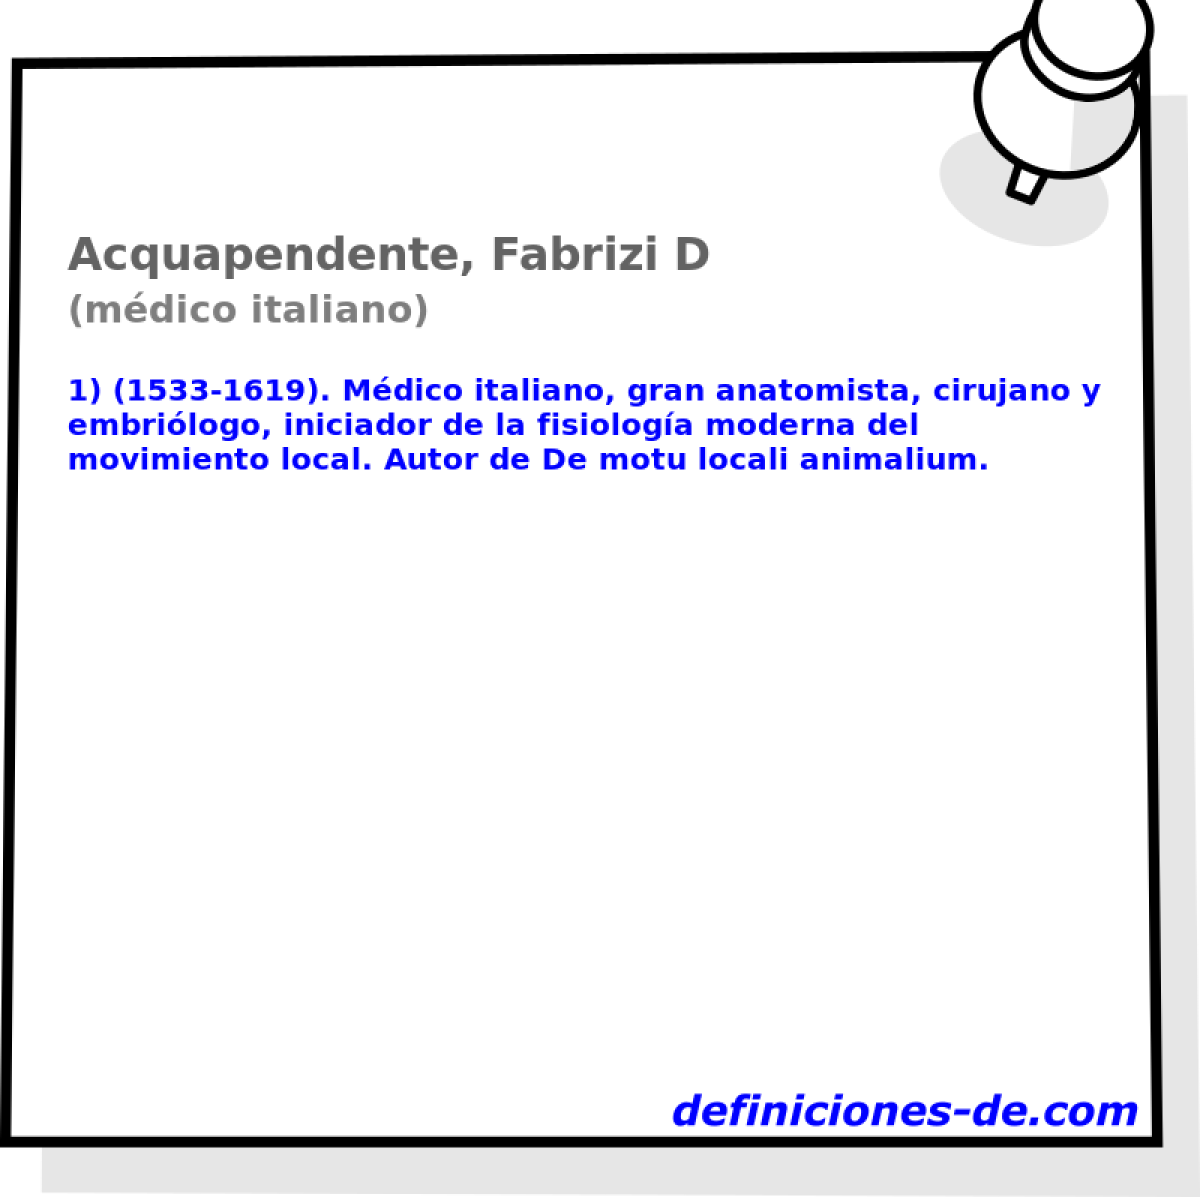 Acquapendente, Fabrizi D (mdico italiano)